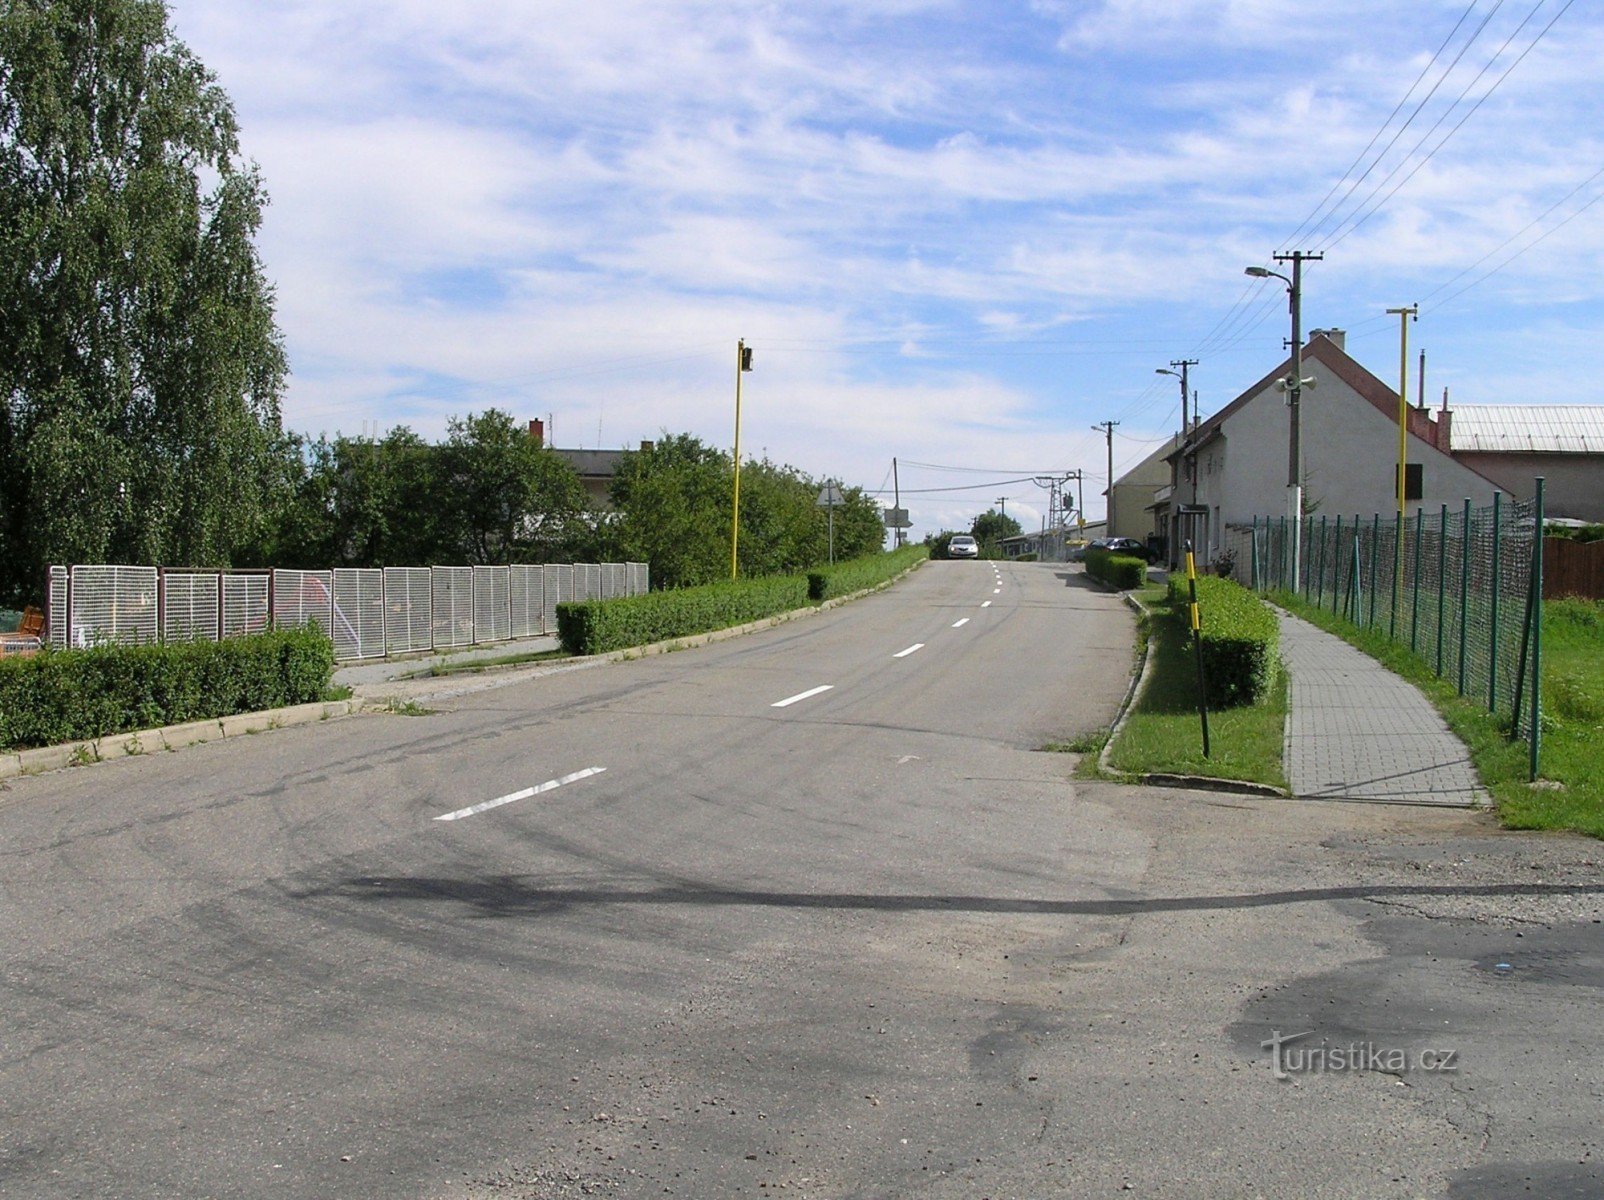 đường đến Otrokovice